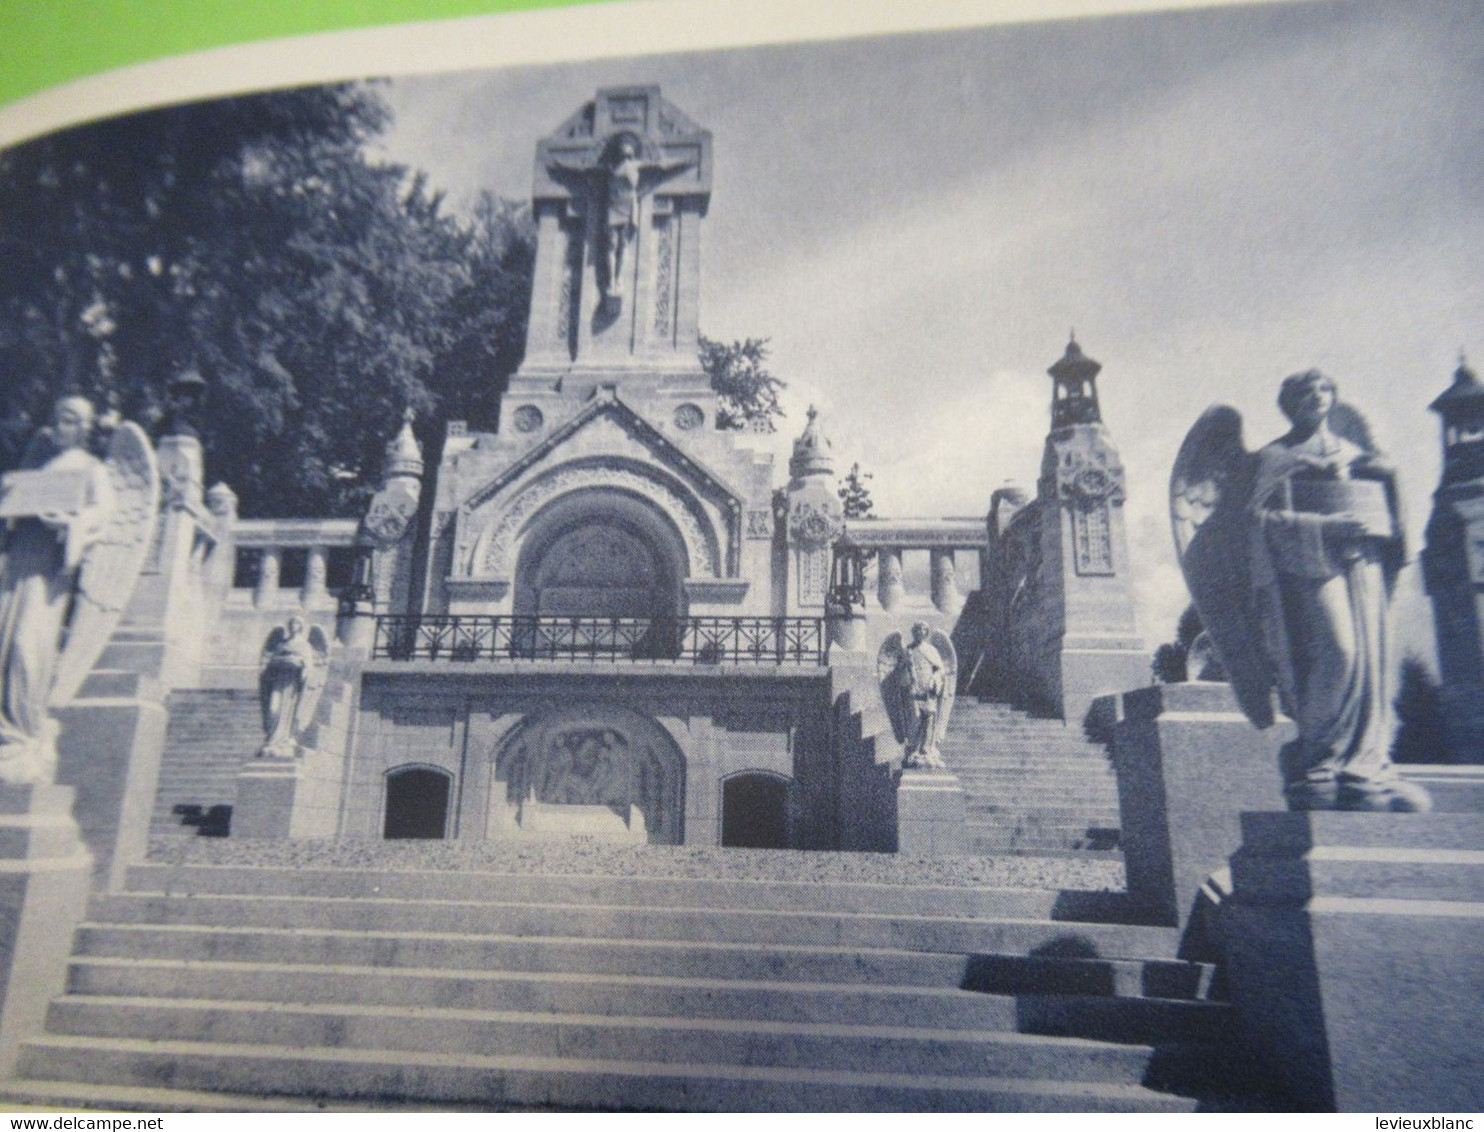 Cartes Postales anciennes au profit de la Basilique de LISIEUX/Le chemin de Croix Monumental/Draeger/Vers1930  CAN848